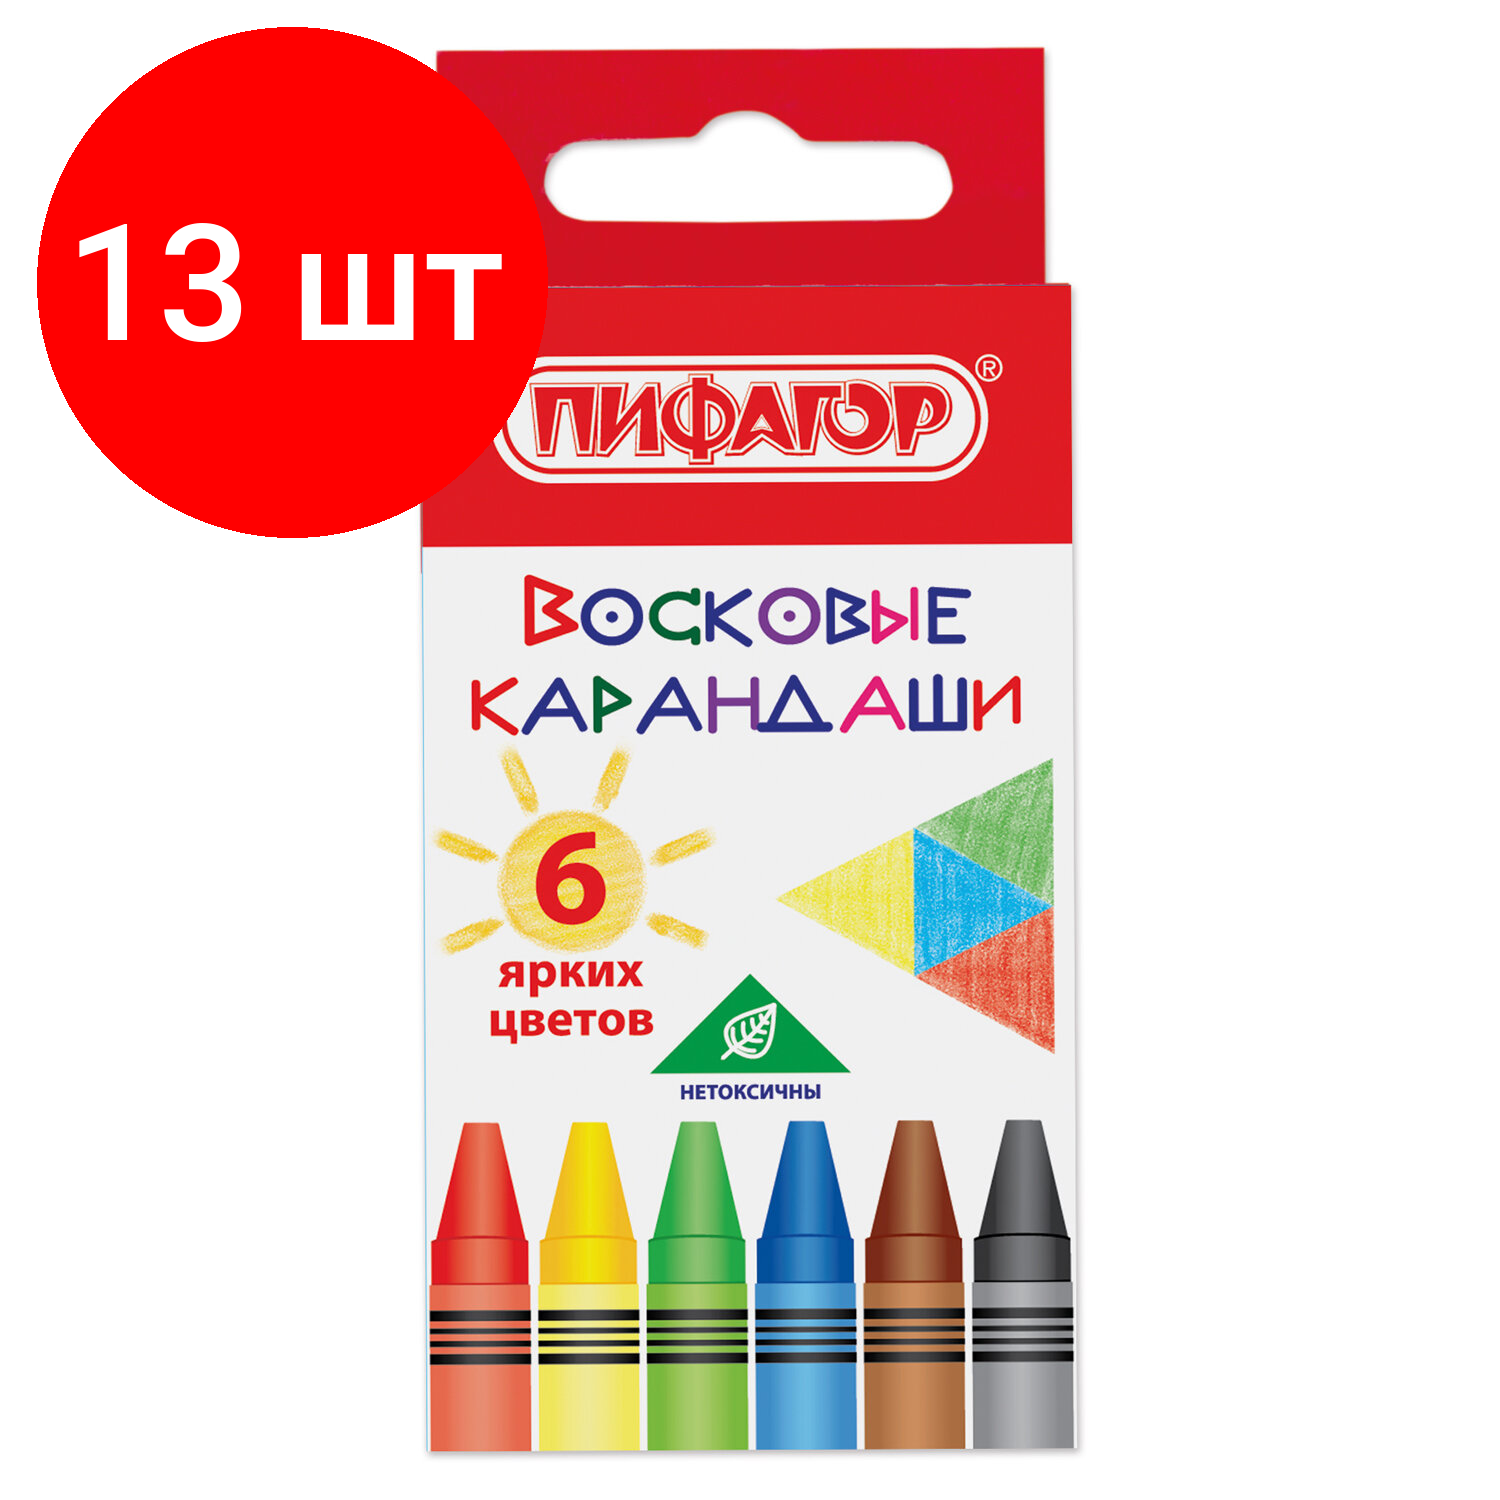 Комплект 13 шт, Восковые карандаши пифагор "солнышко", набор 6 цветов, 227278